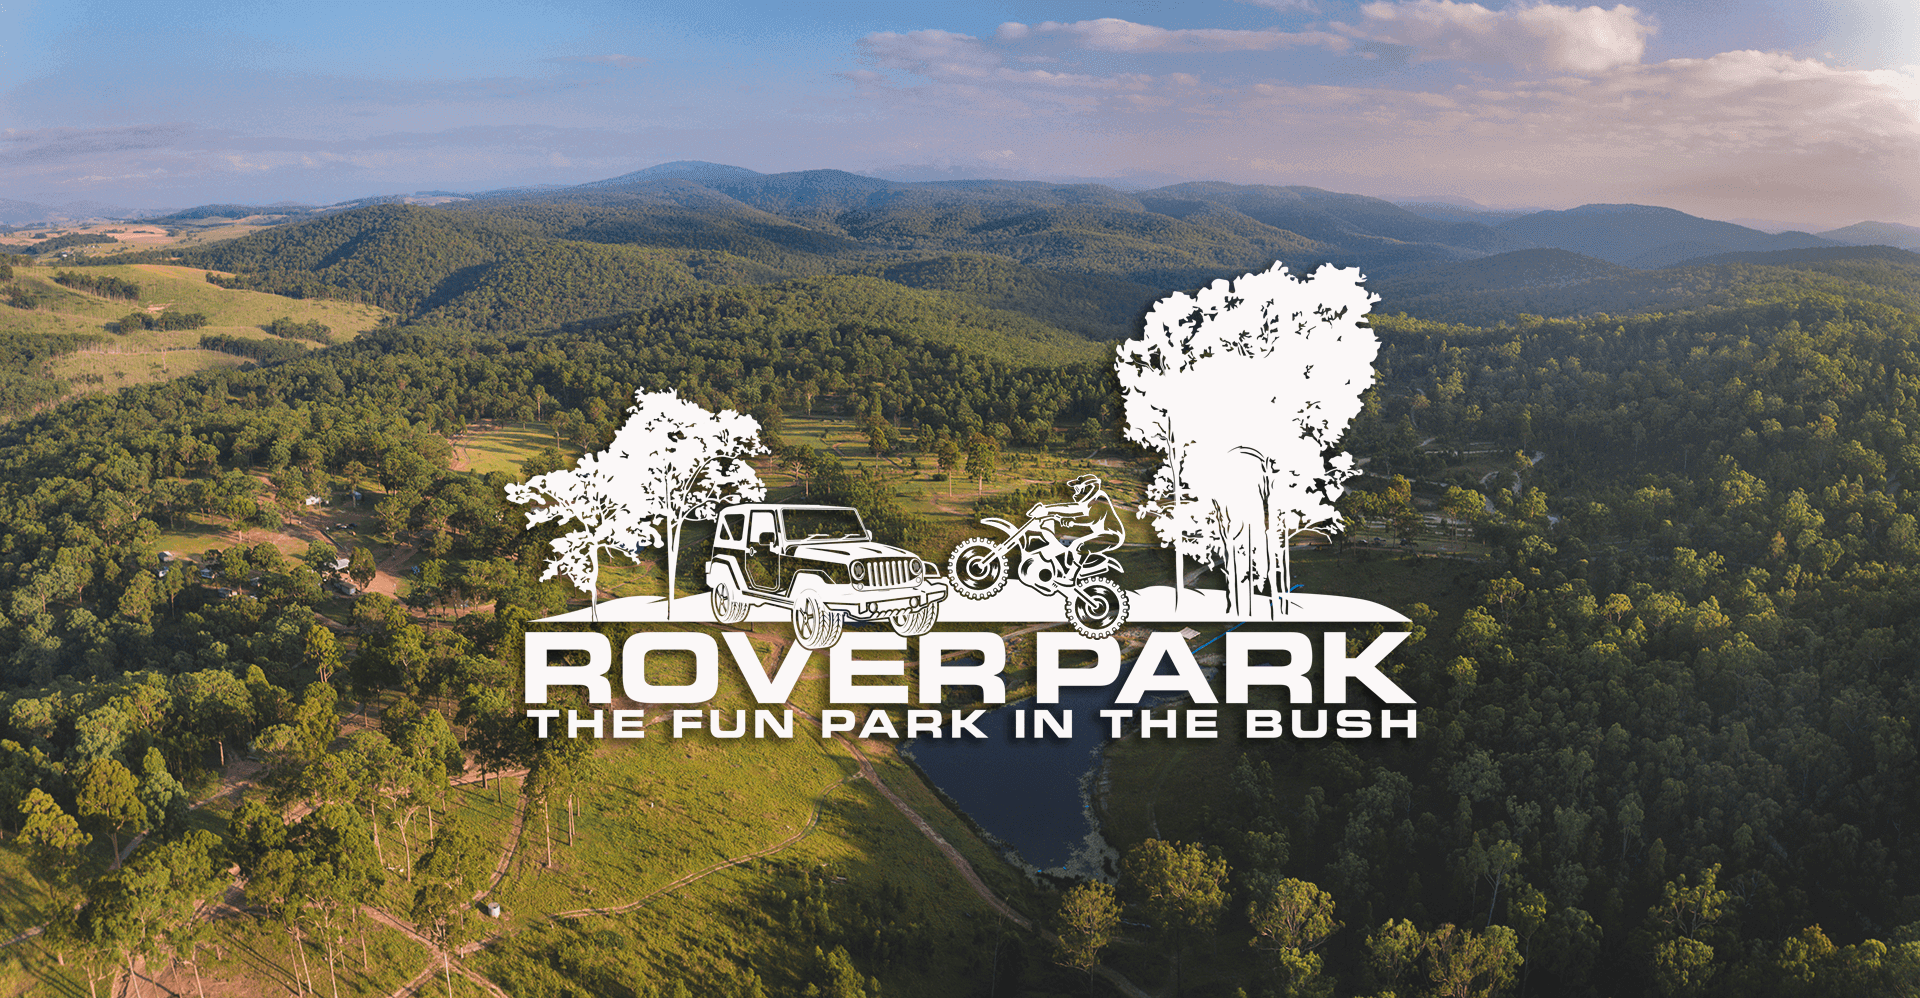 (c) Roverpark.com.au